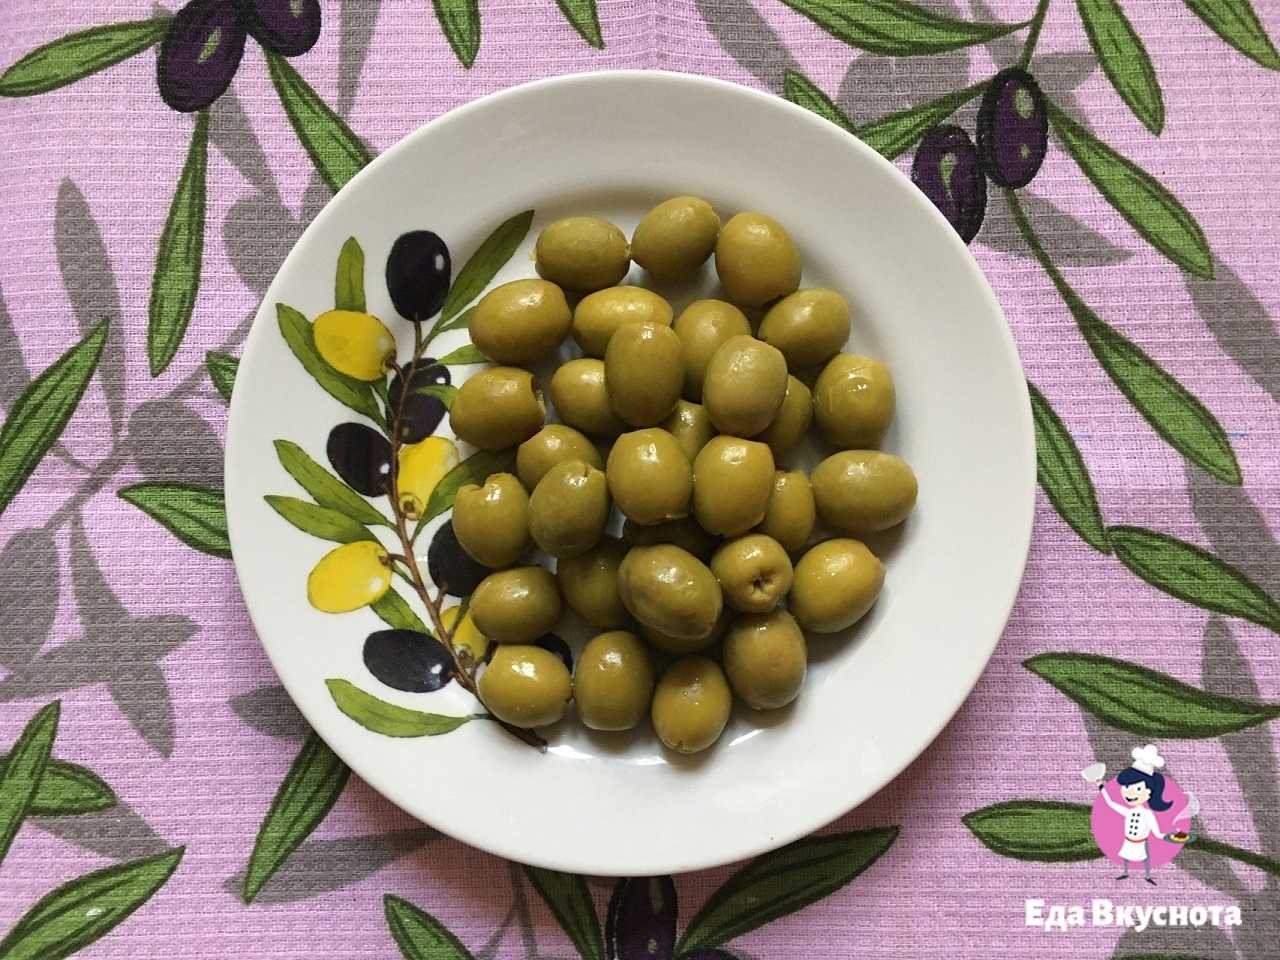 Оливки (маслины) - описание, полезные и вредные свойства, состав, калорийность, фото, рецепты приготовления